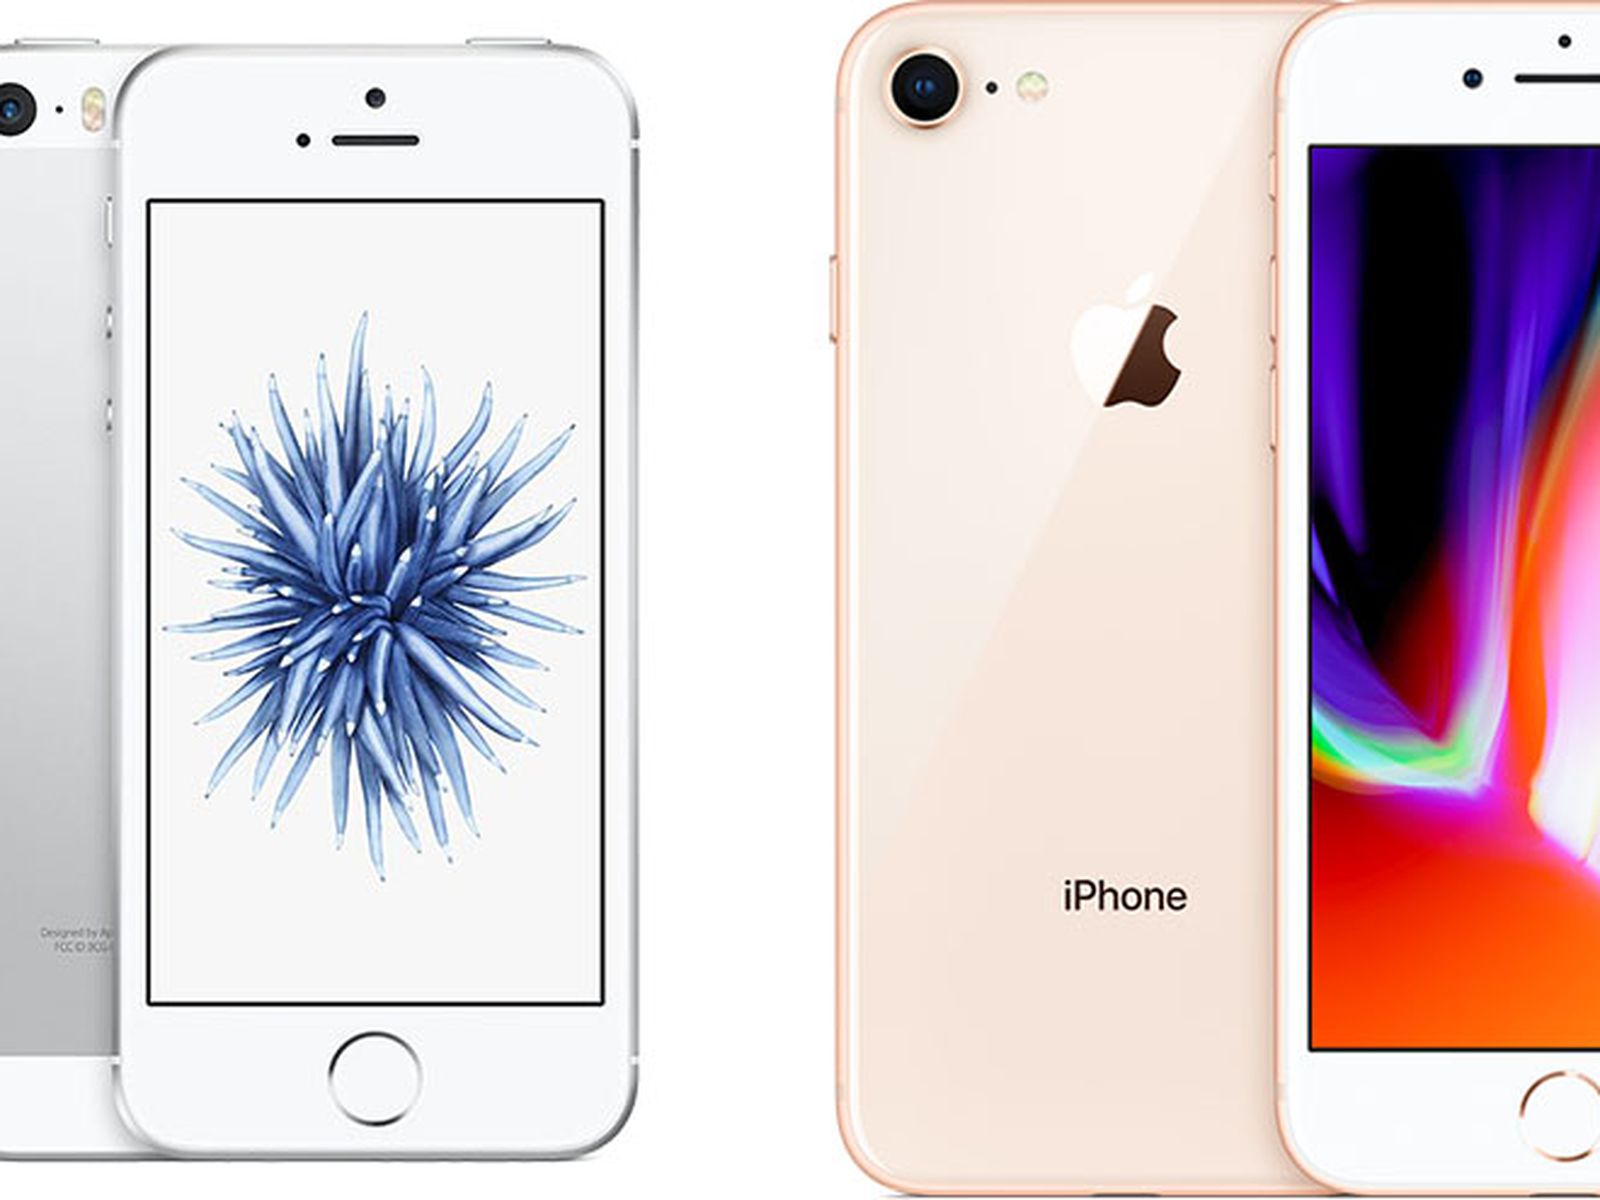 iPhone 9: Apple lanzará un móvil 'low-cost' en marzo